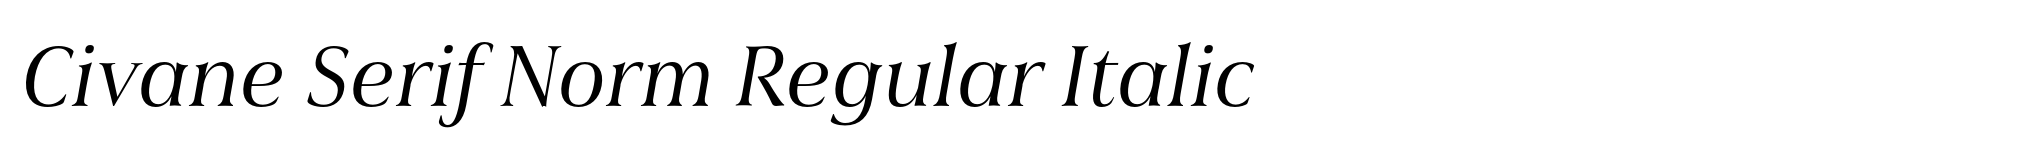 Civane Serif Norm Regular Italic image